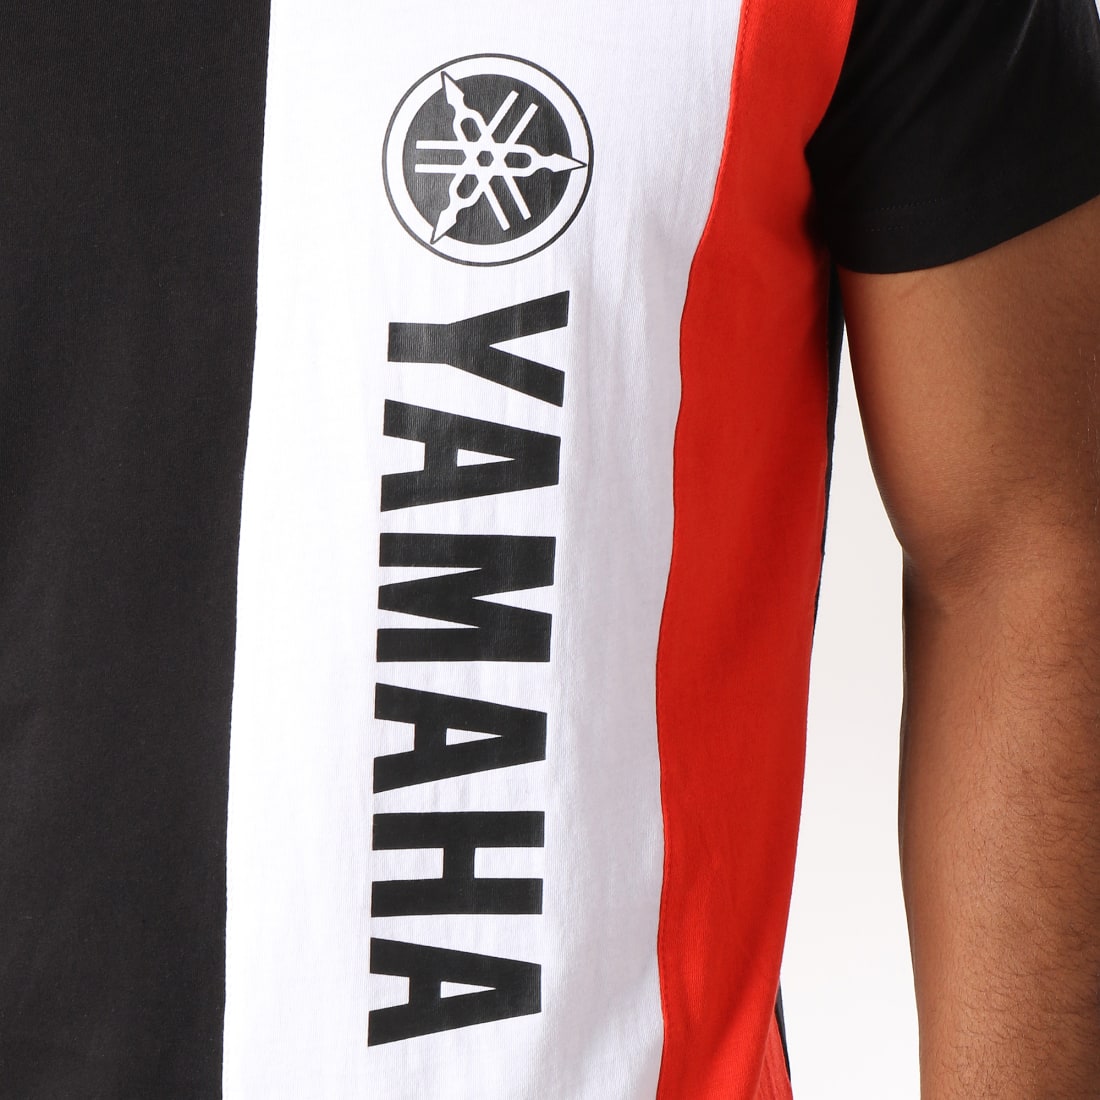 T-shirt Yamaha Découvrez notre sélection-Absolute Yam Le blog Yamaha